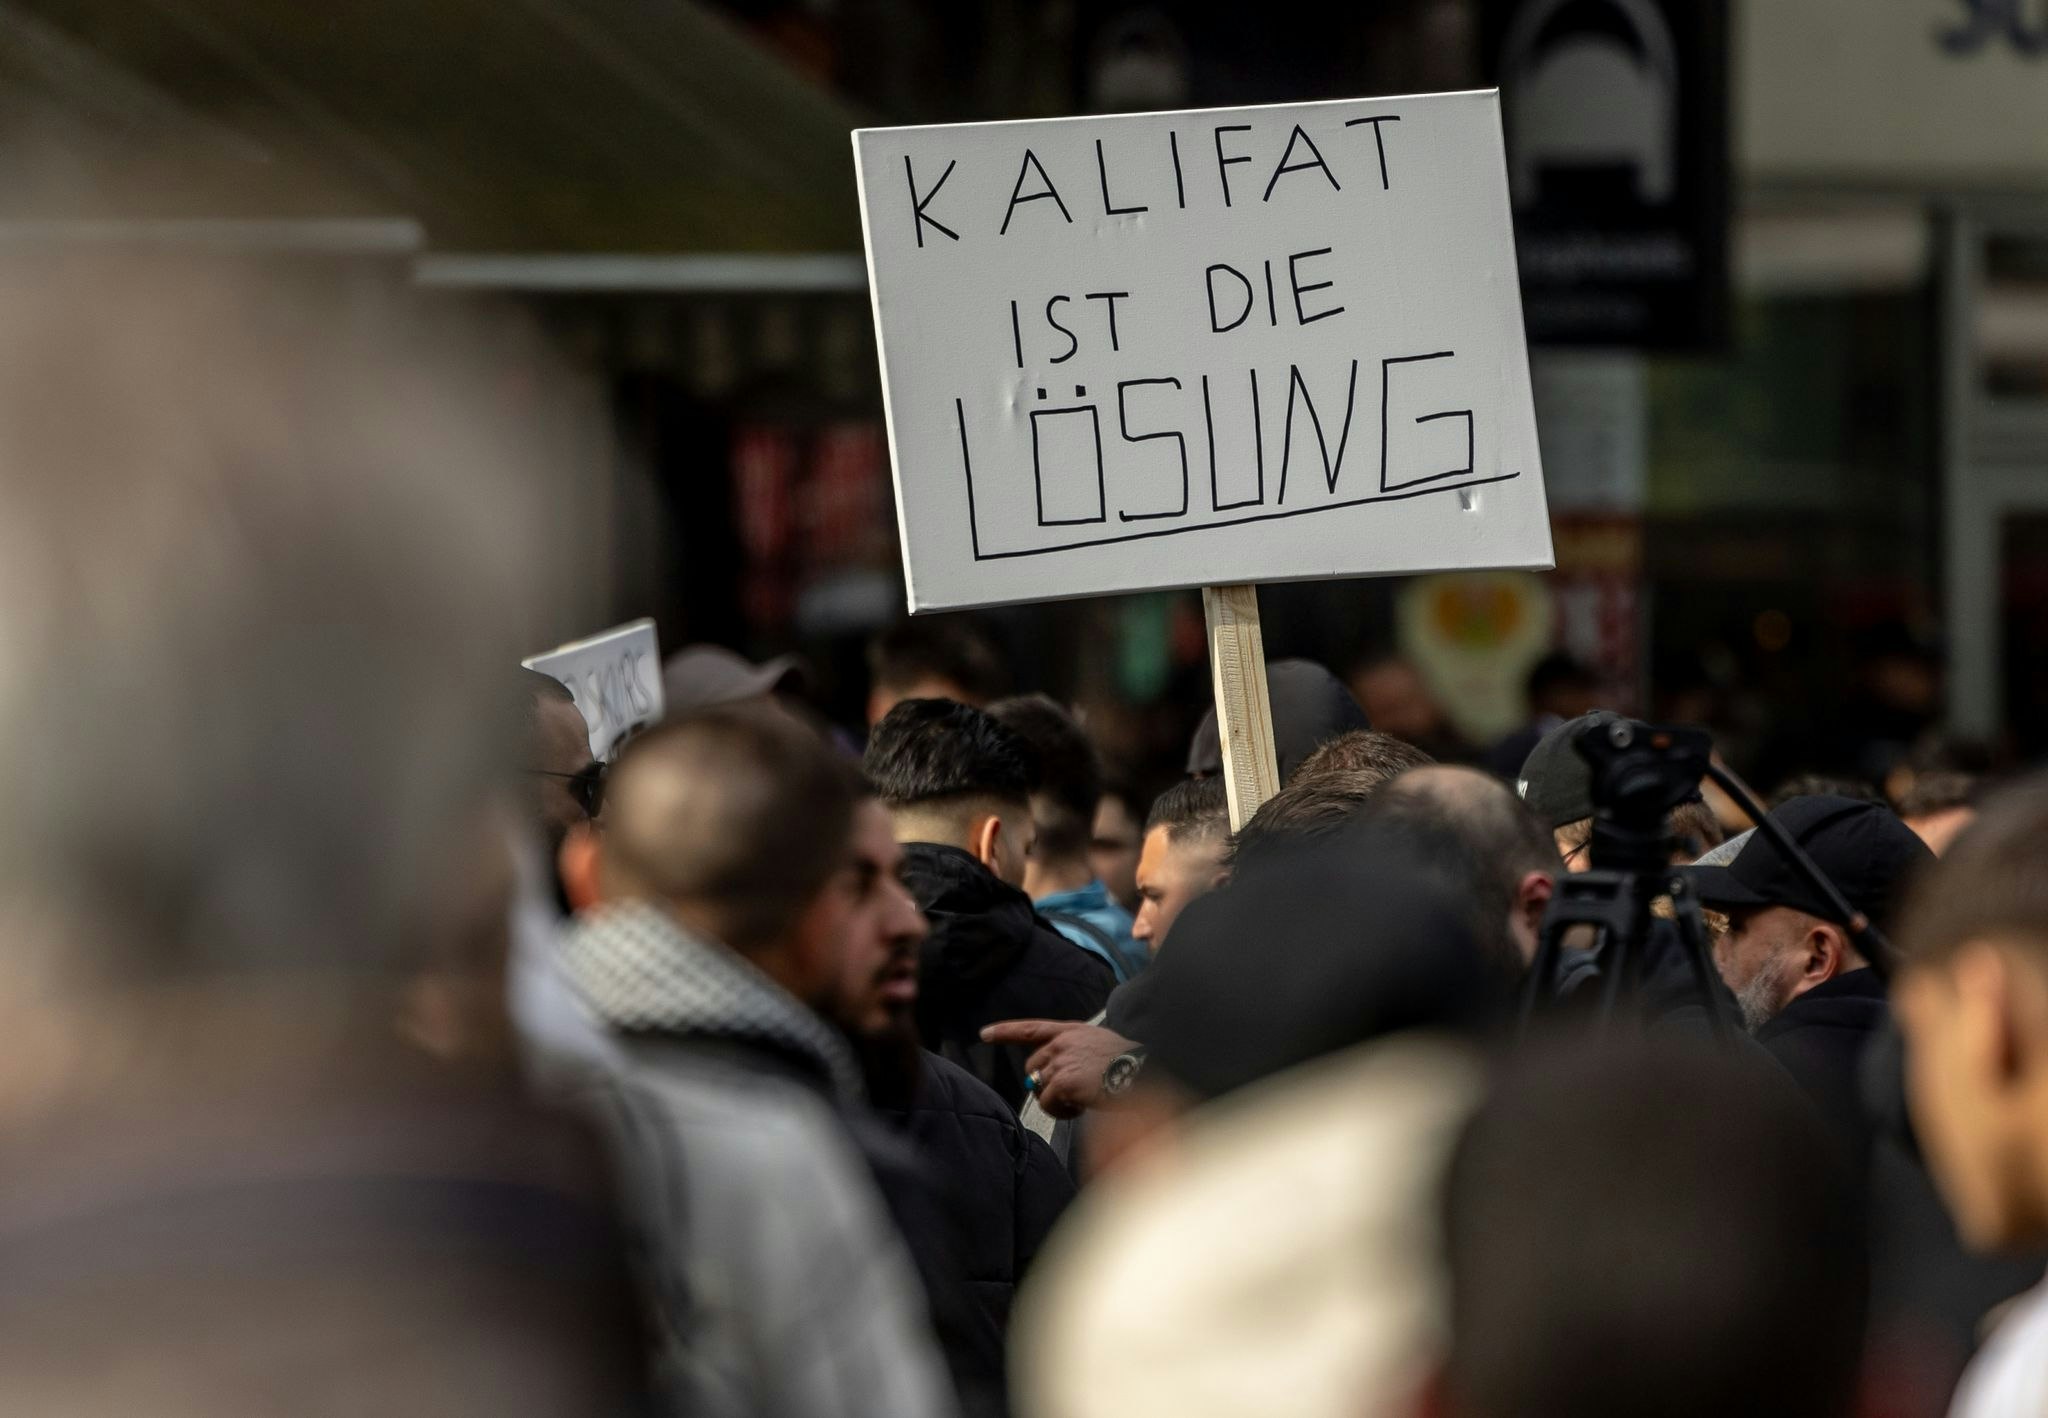 extremismus: nach islamisten-demo: ruf nach kalifat strafbar machen?